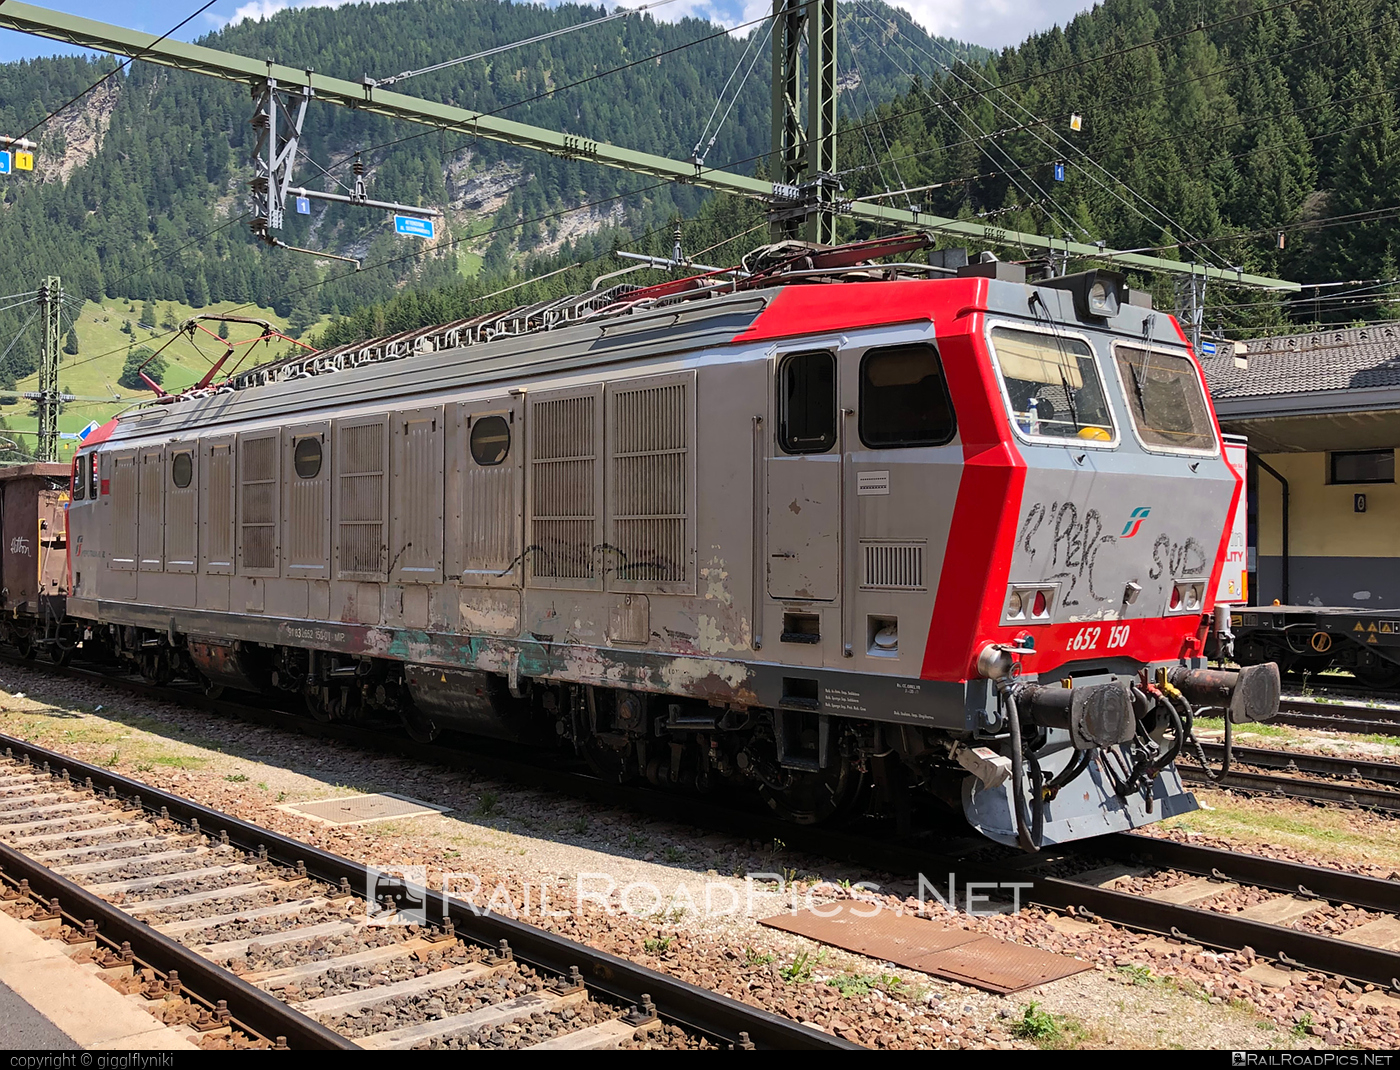 FS Class E.652 - E652 150 operated by Mercitalia Rail S.r.l. #e652 #ferroviedellostato #fs #fsClassE652 #fsitaliane #mercitalia #tigre